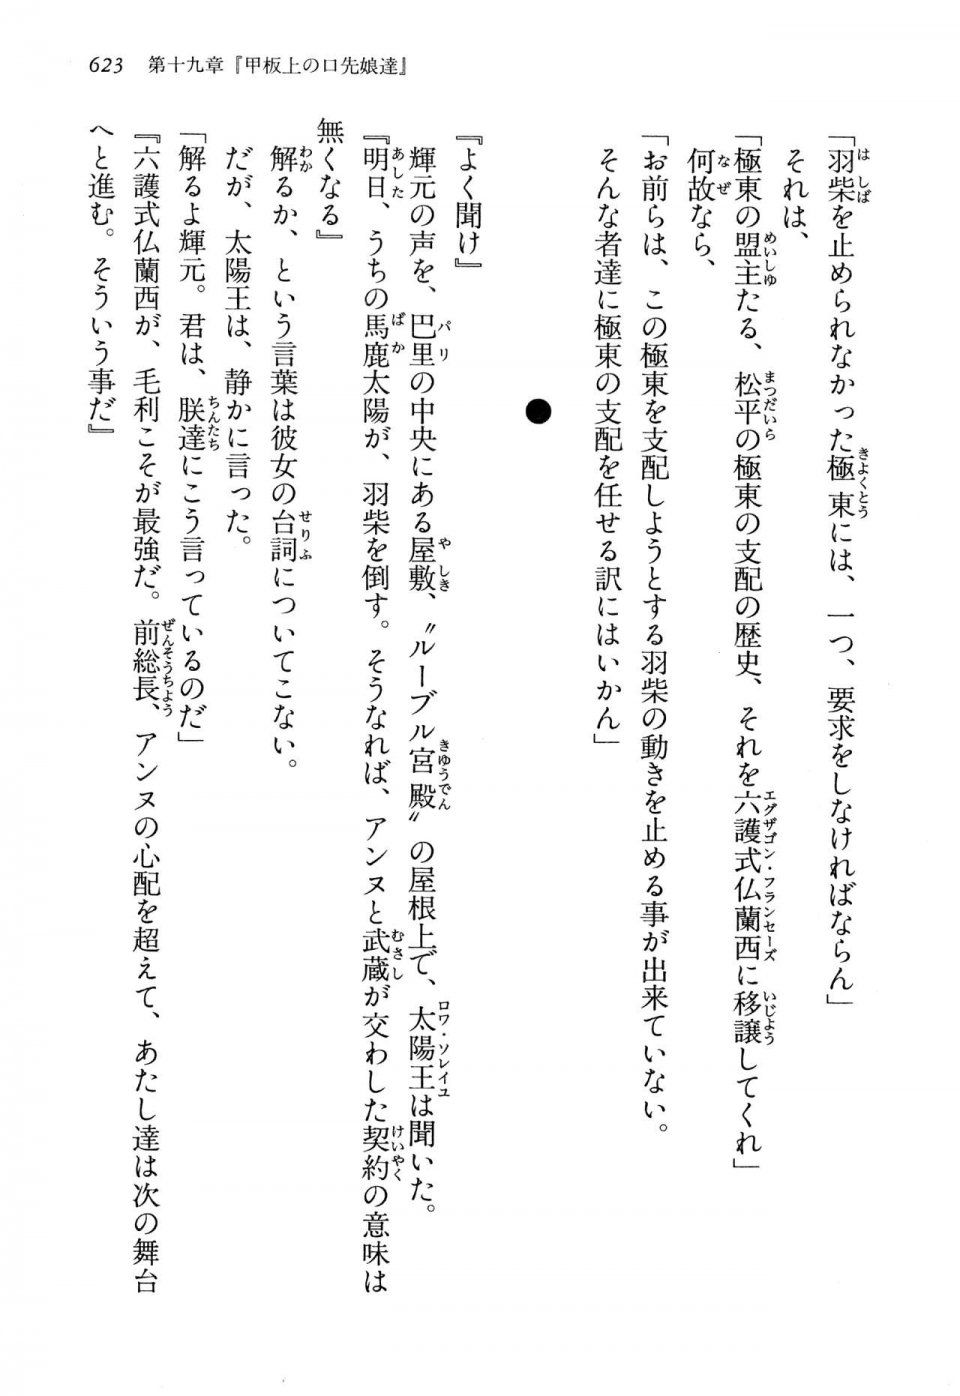 Kyoukai Senjou no Horizon LN Vol 13(6A) - Photo #623